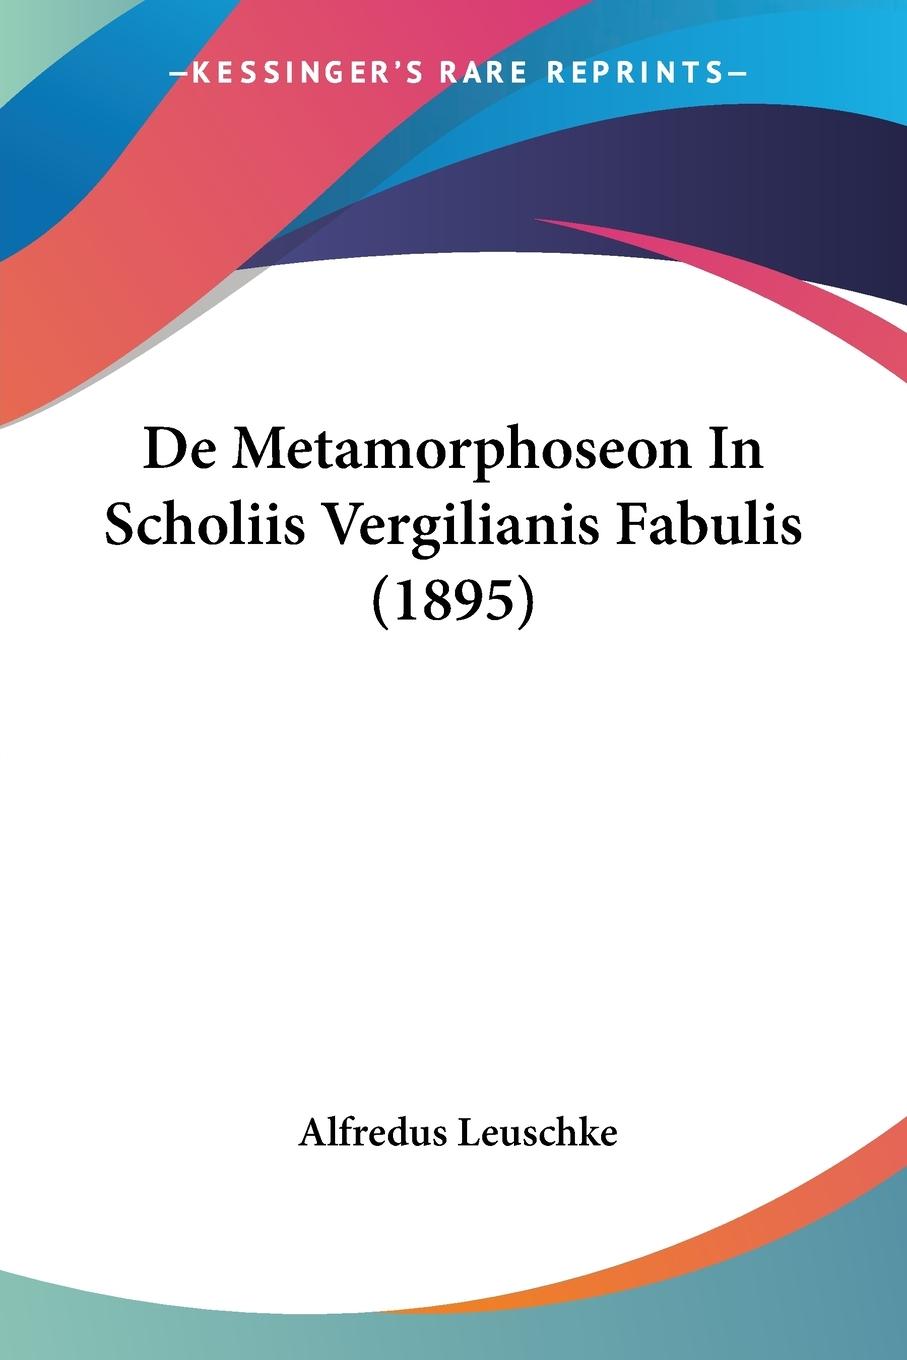 De Metamorphoseon In Scholiis Vergilianis Fabulis (1895) - Leuschke, Alfredus